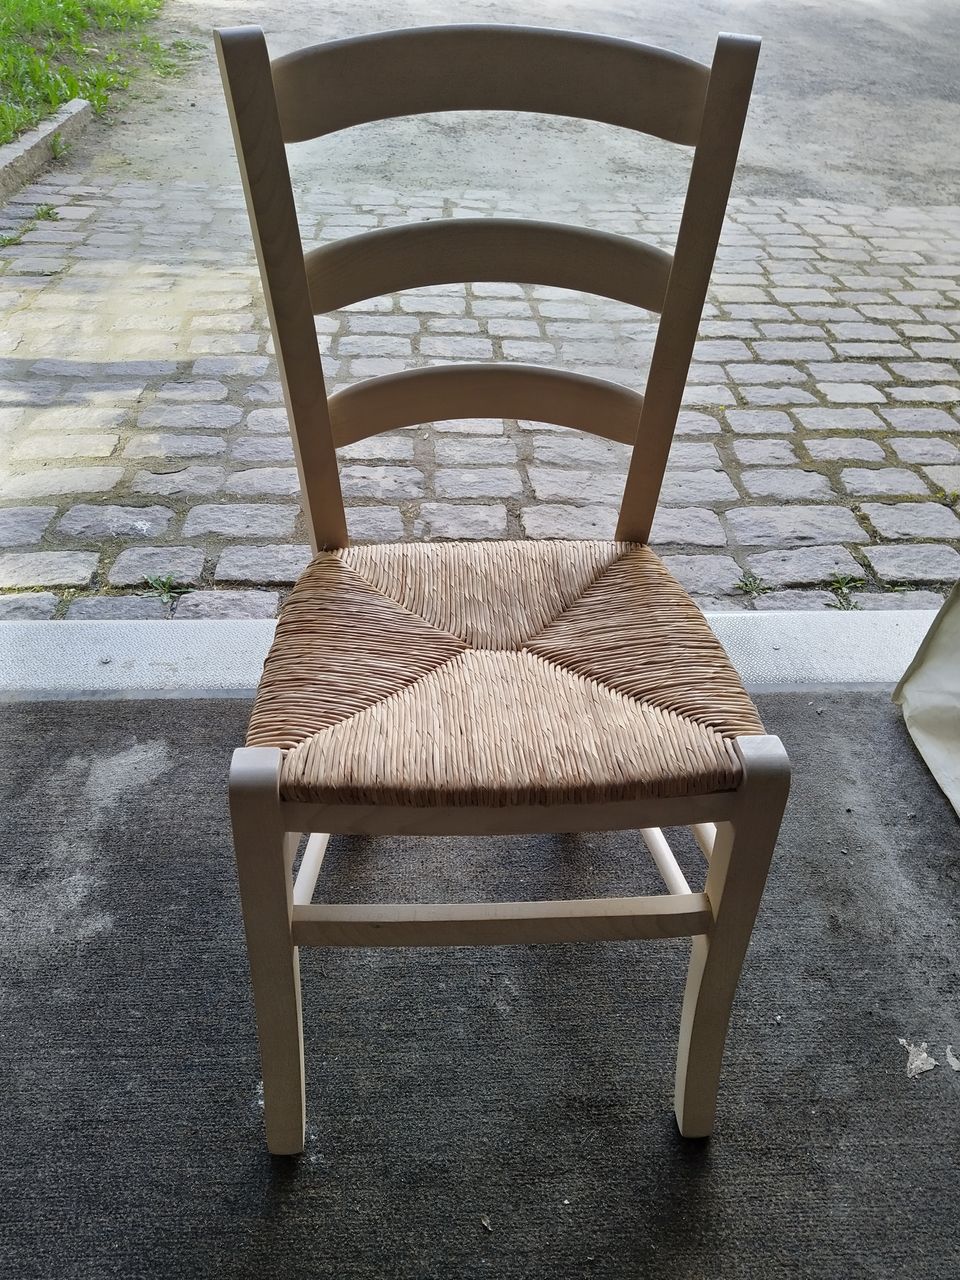 Asko puinen tuoli, istuin rottinkia / narua 50 e kpl